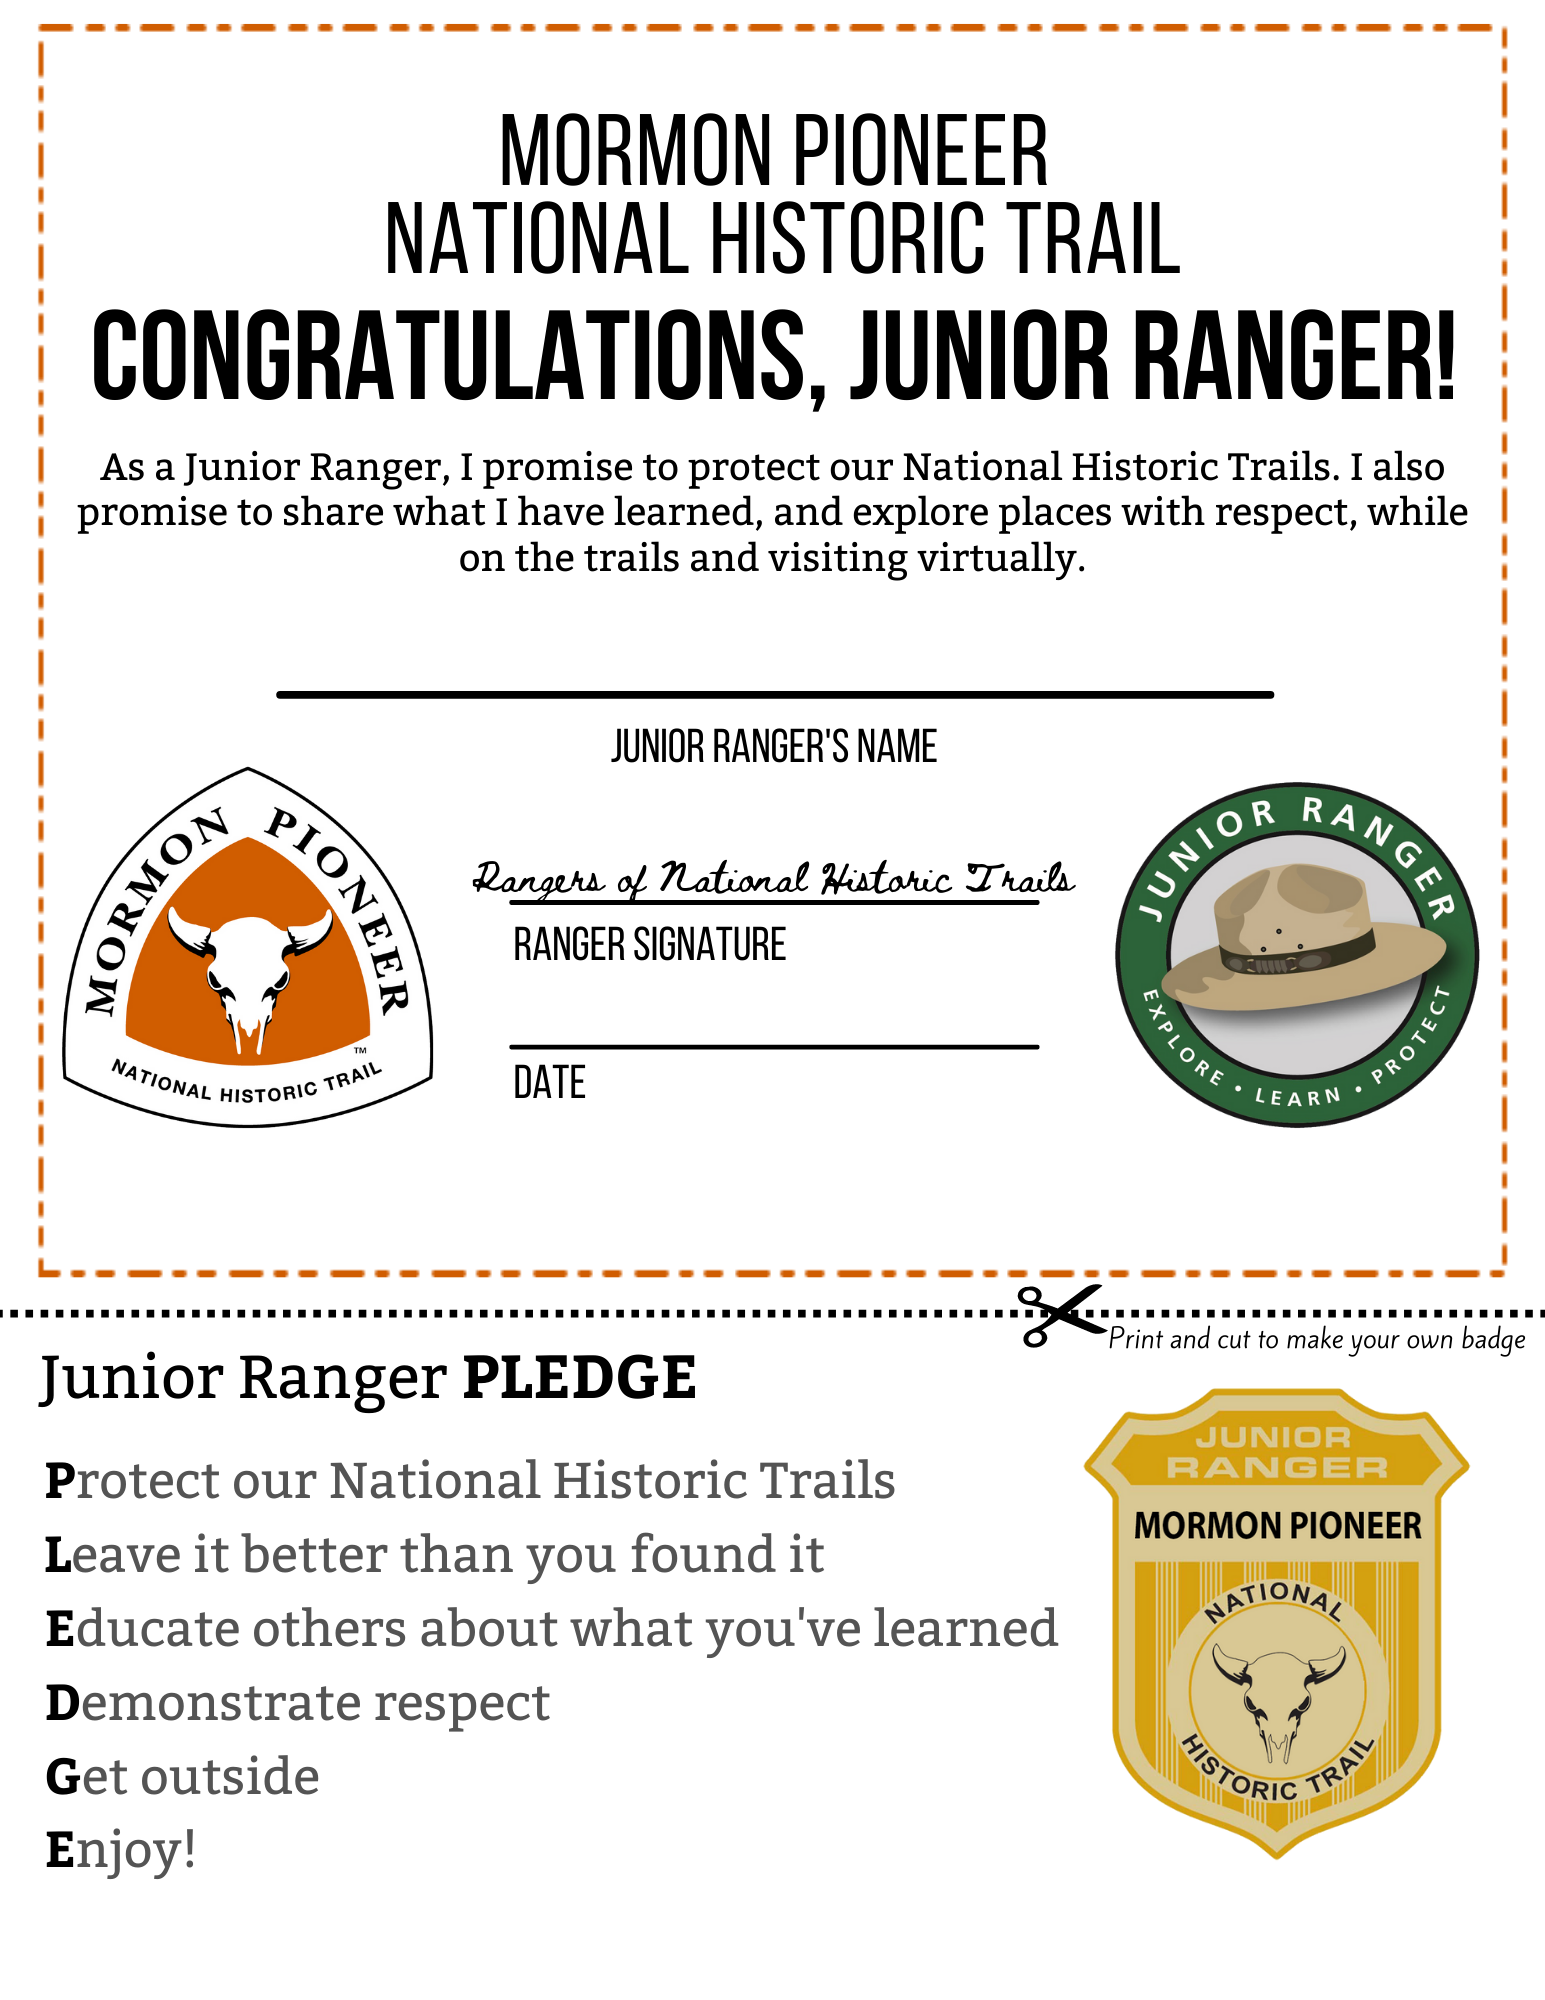 A certificate featuring a junior ranger badge.